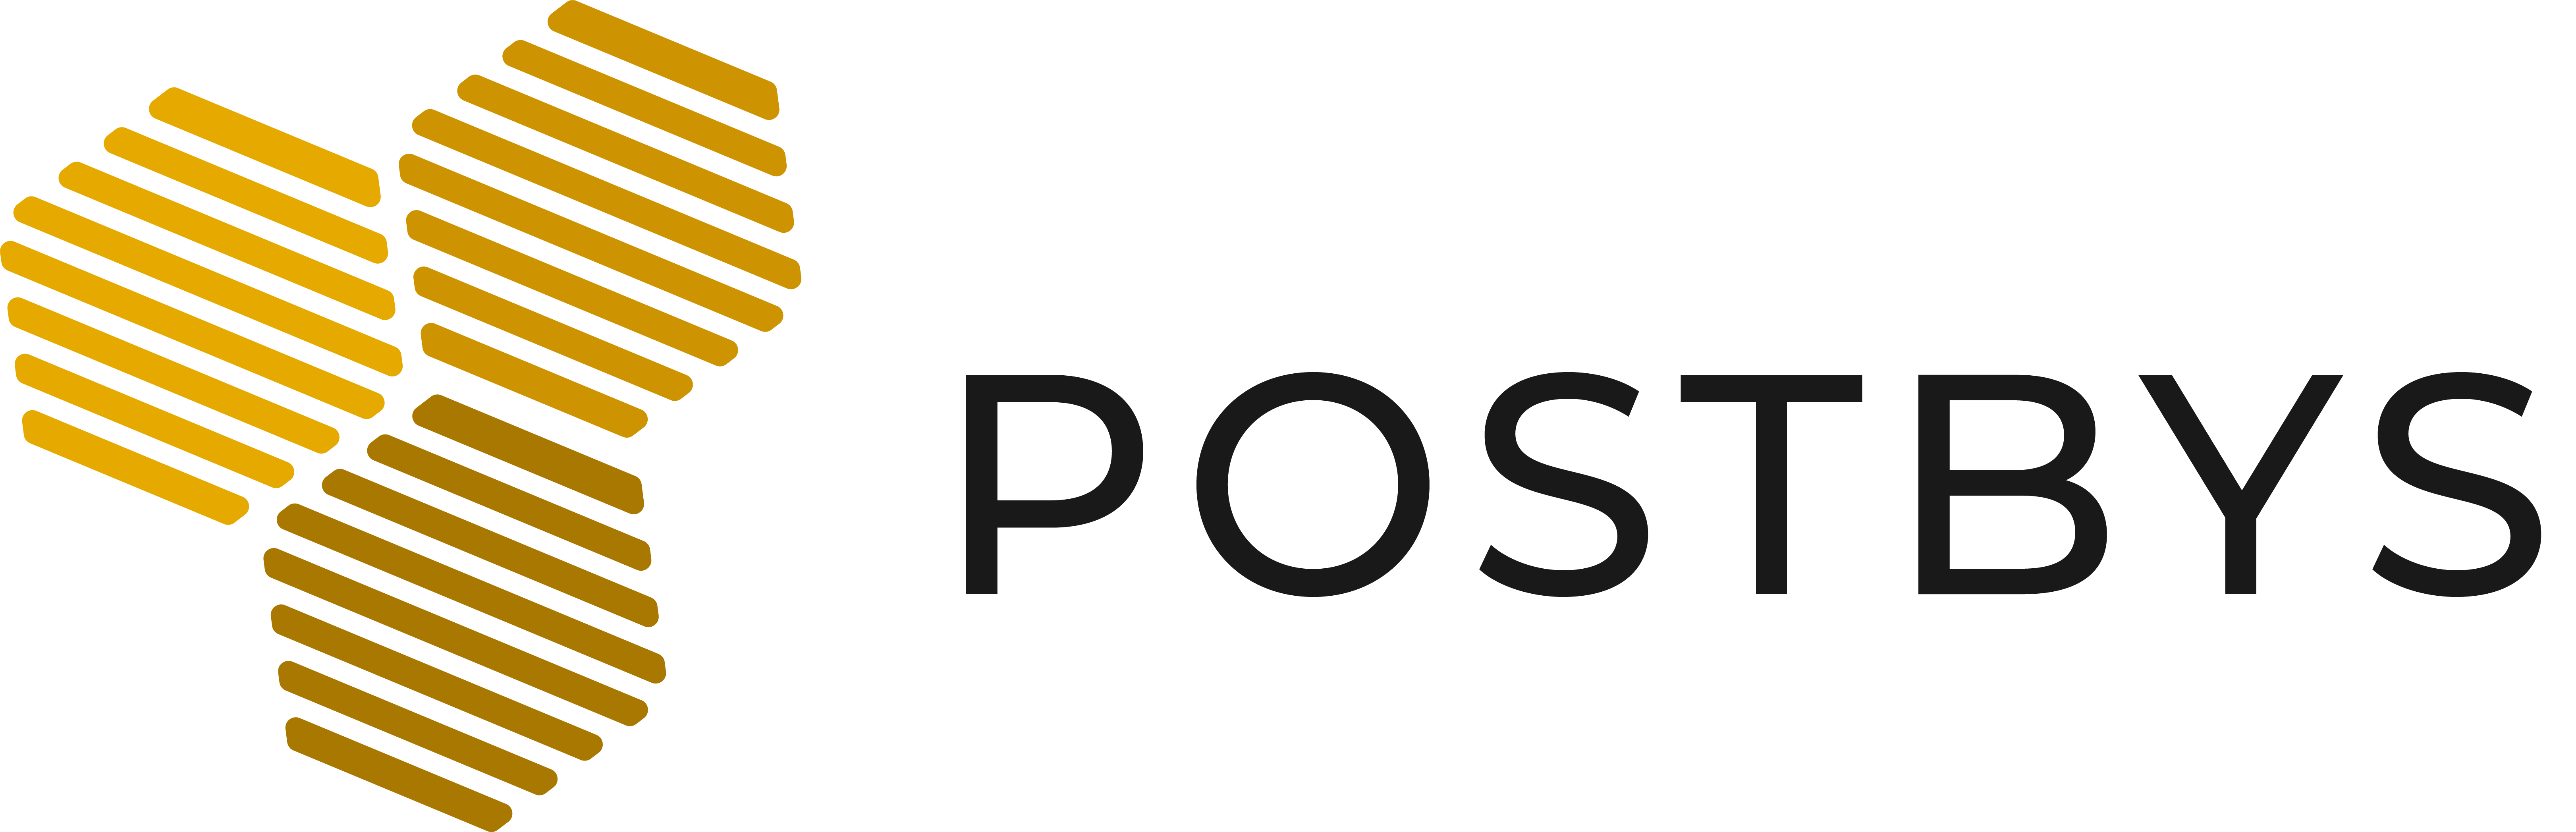 Postbys Support Center